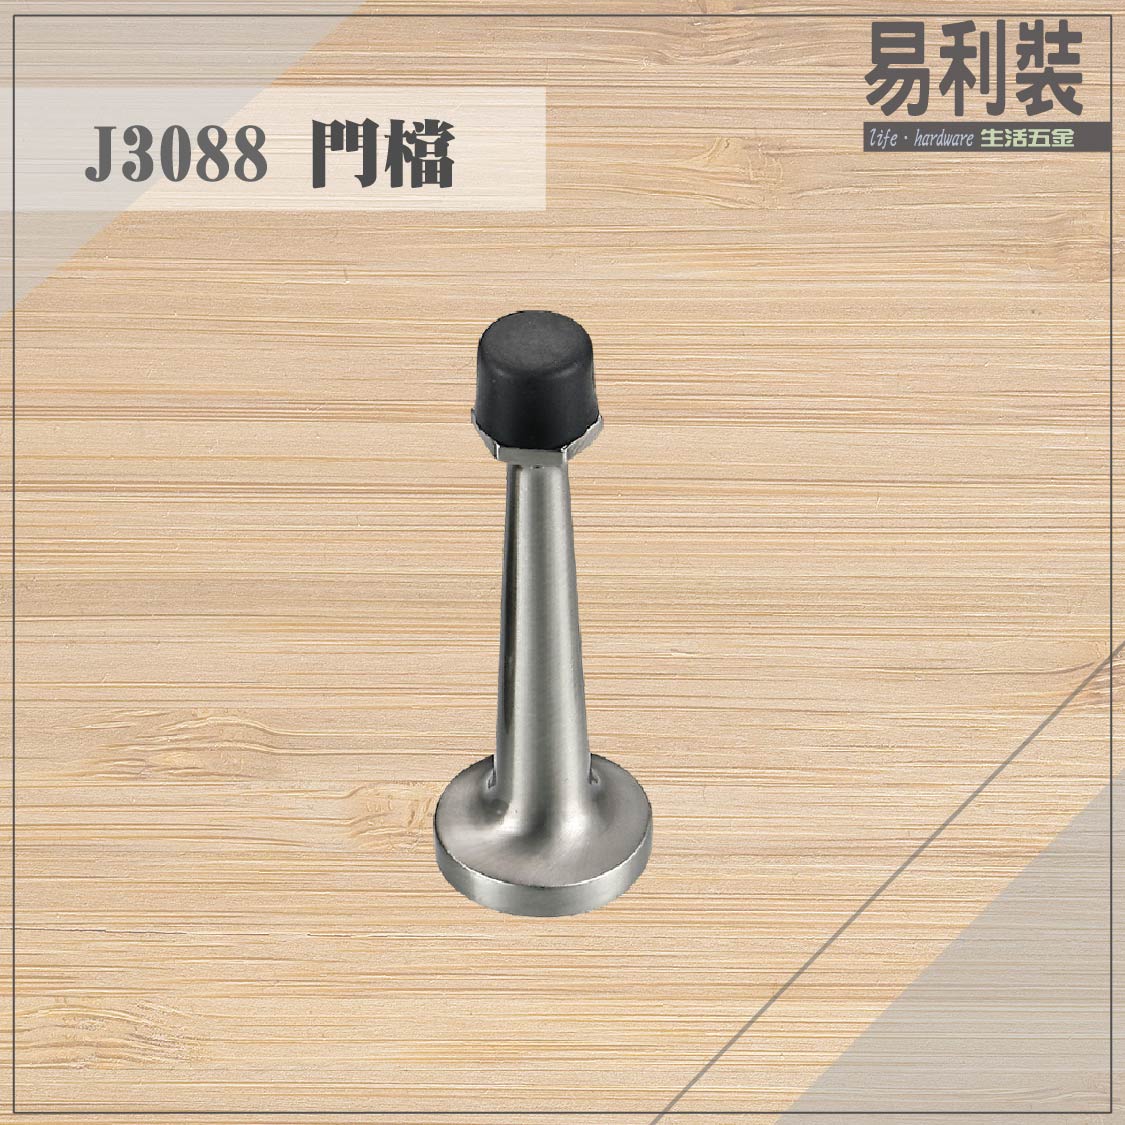 【 EASYCAN】J3088 不鏽鋼門檔 易利裝生活五金 浴室 廚房 房間